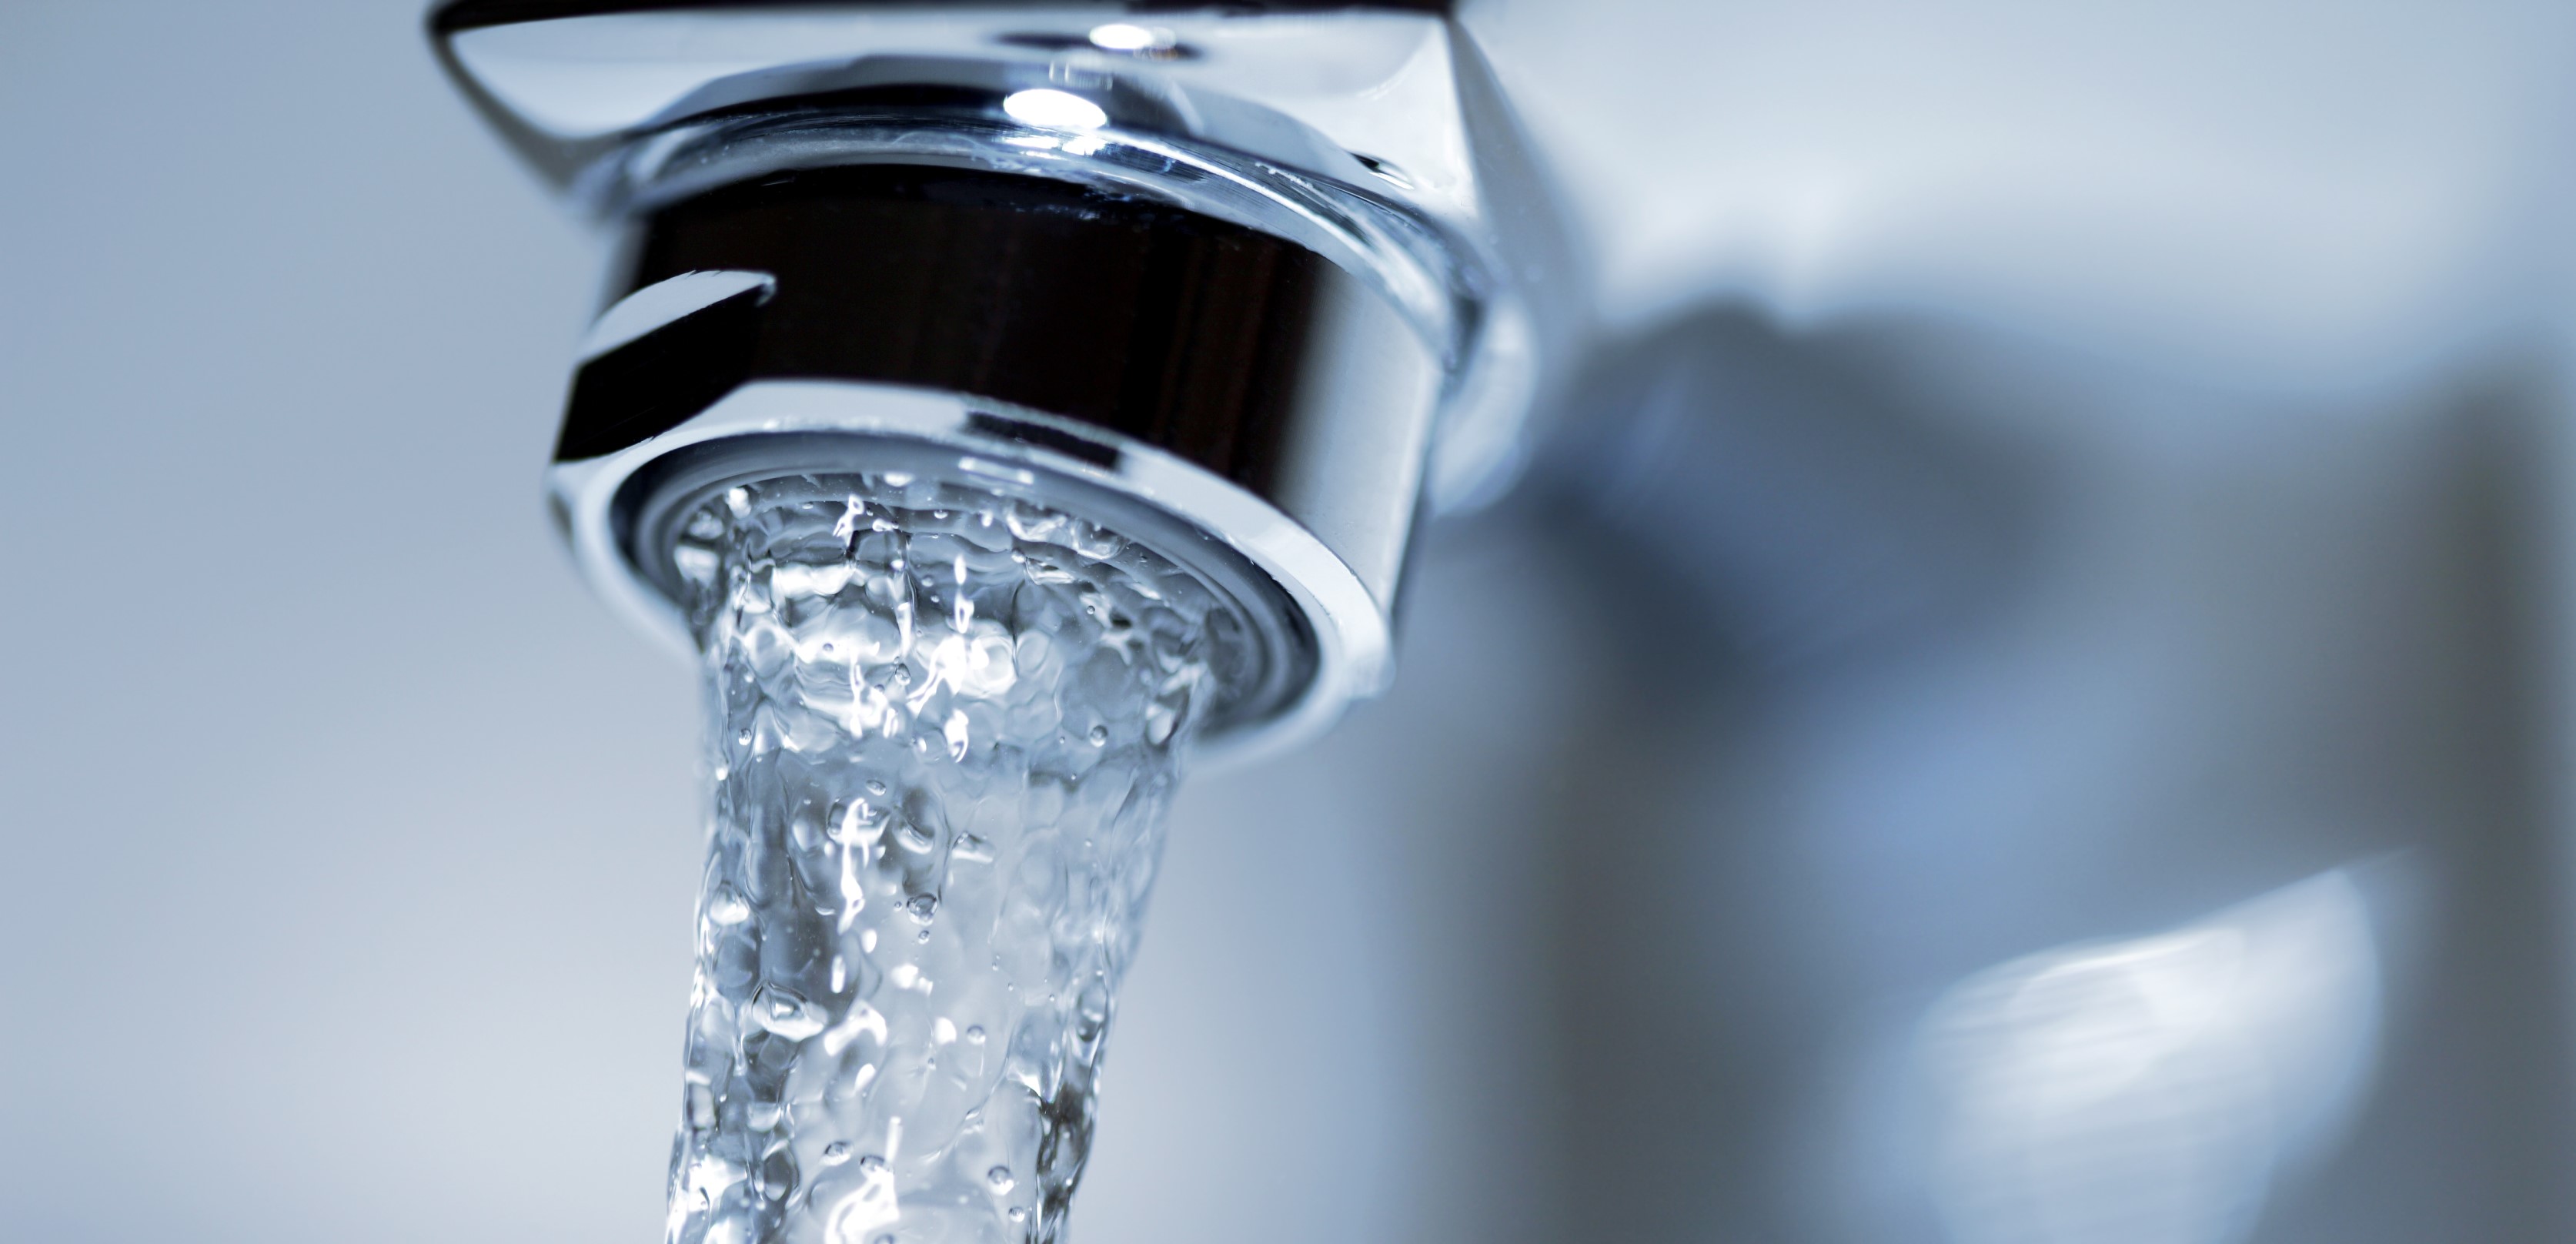 Trinkwasser: Wasseraufbereitung und Wasserbehandlung, Trinkwasserprüfung gemäß VDI 6023